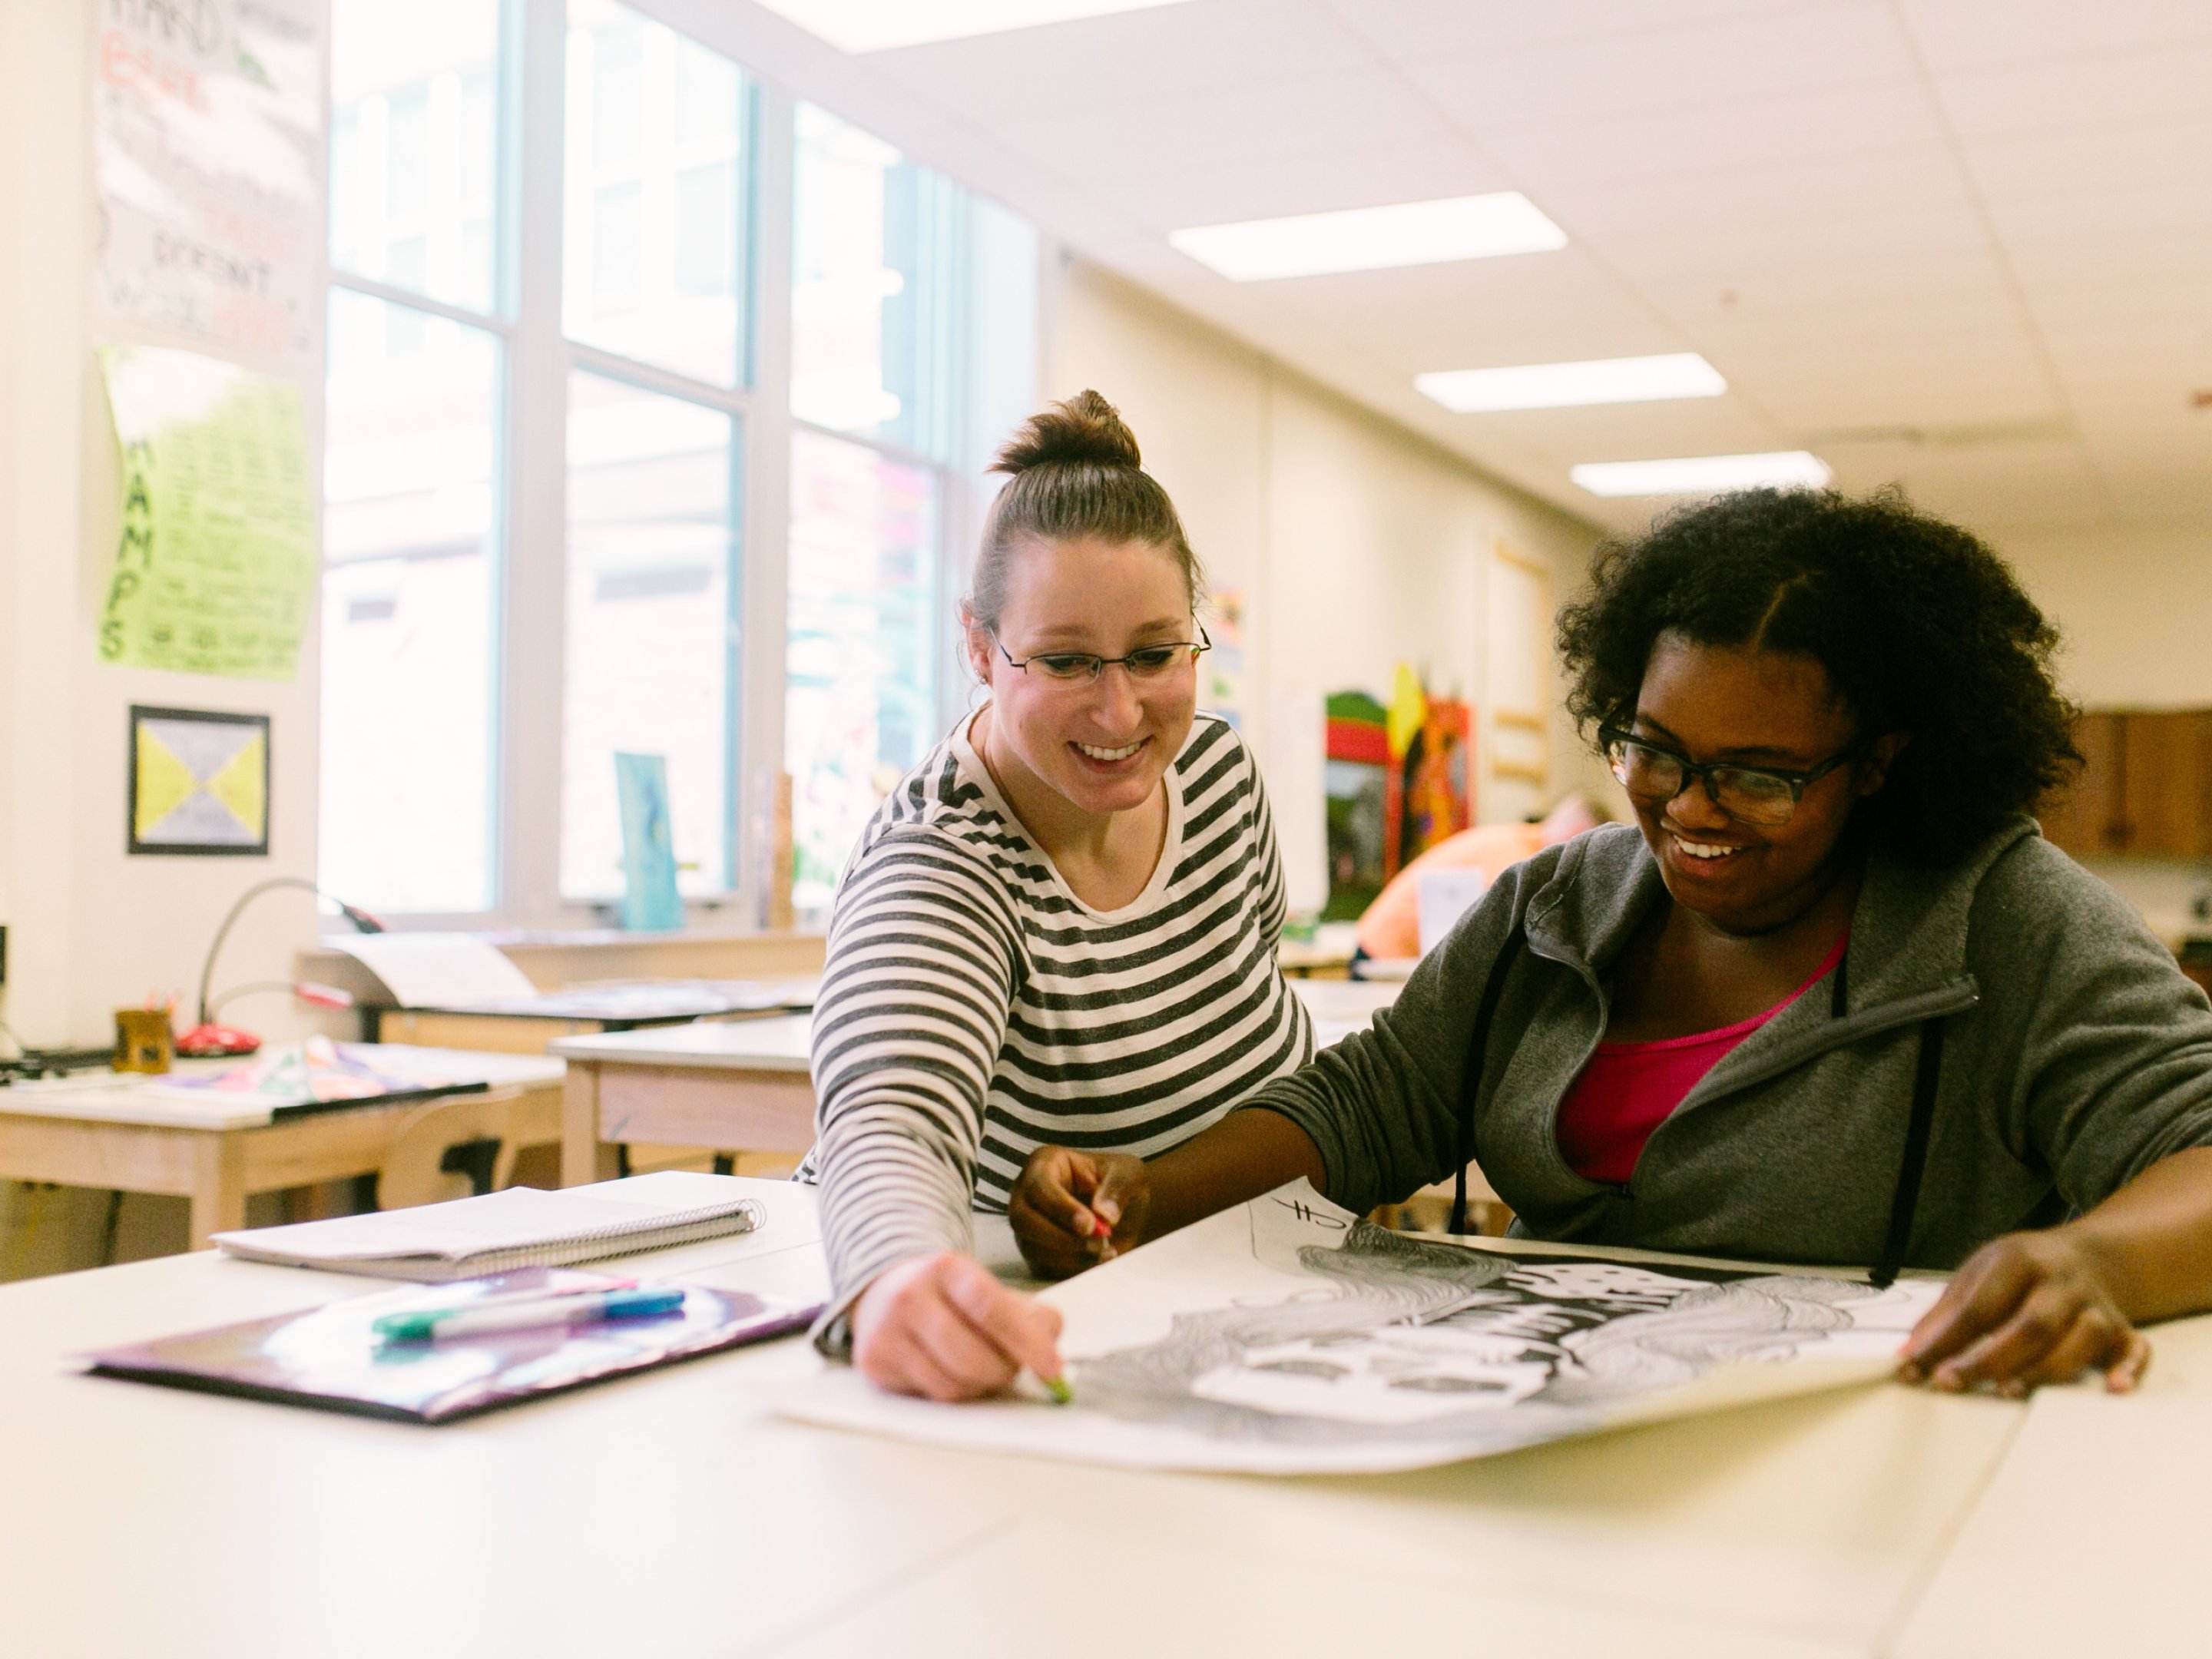 Un professeur d'art aide un élève à dessiner en cours d'art.